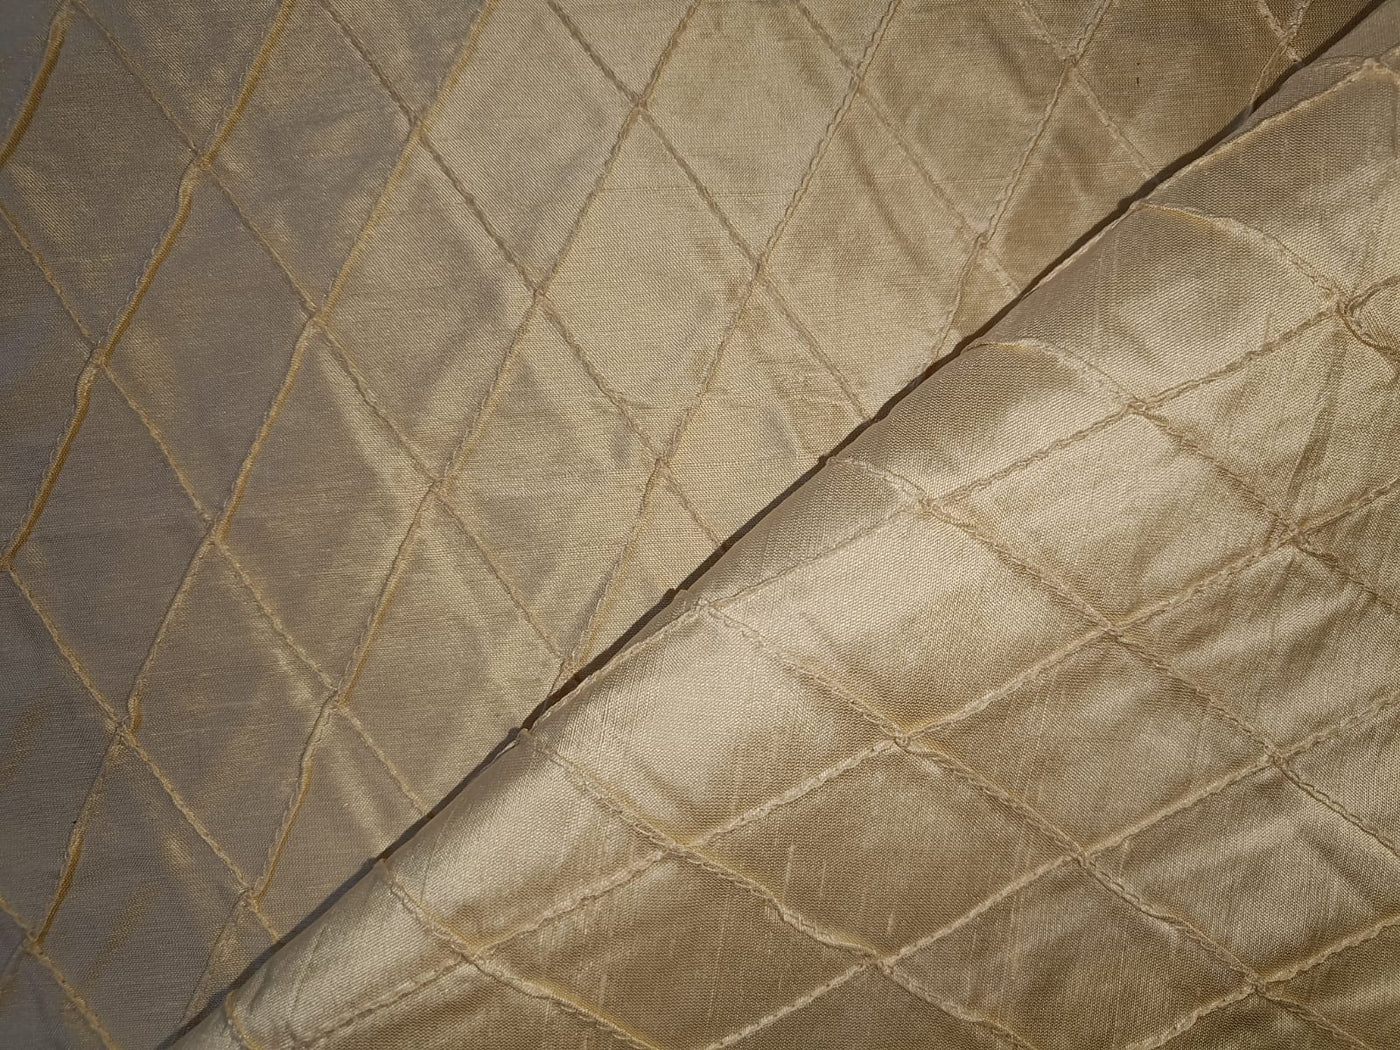 Silk dupioni Beige color fabric pintuck design DUPP16[1]